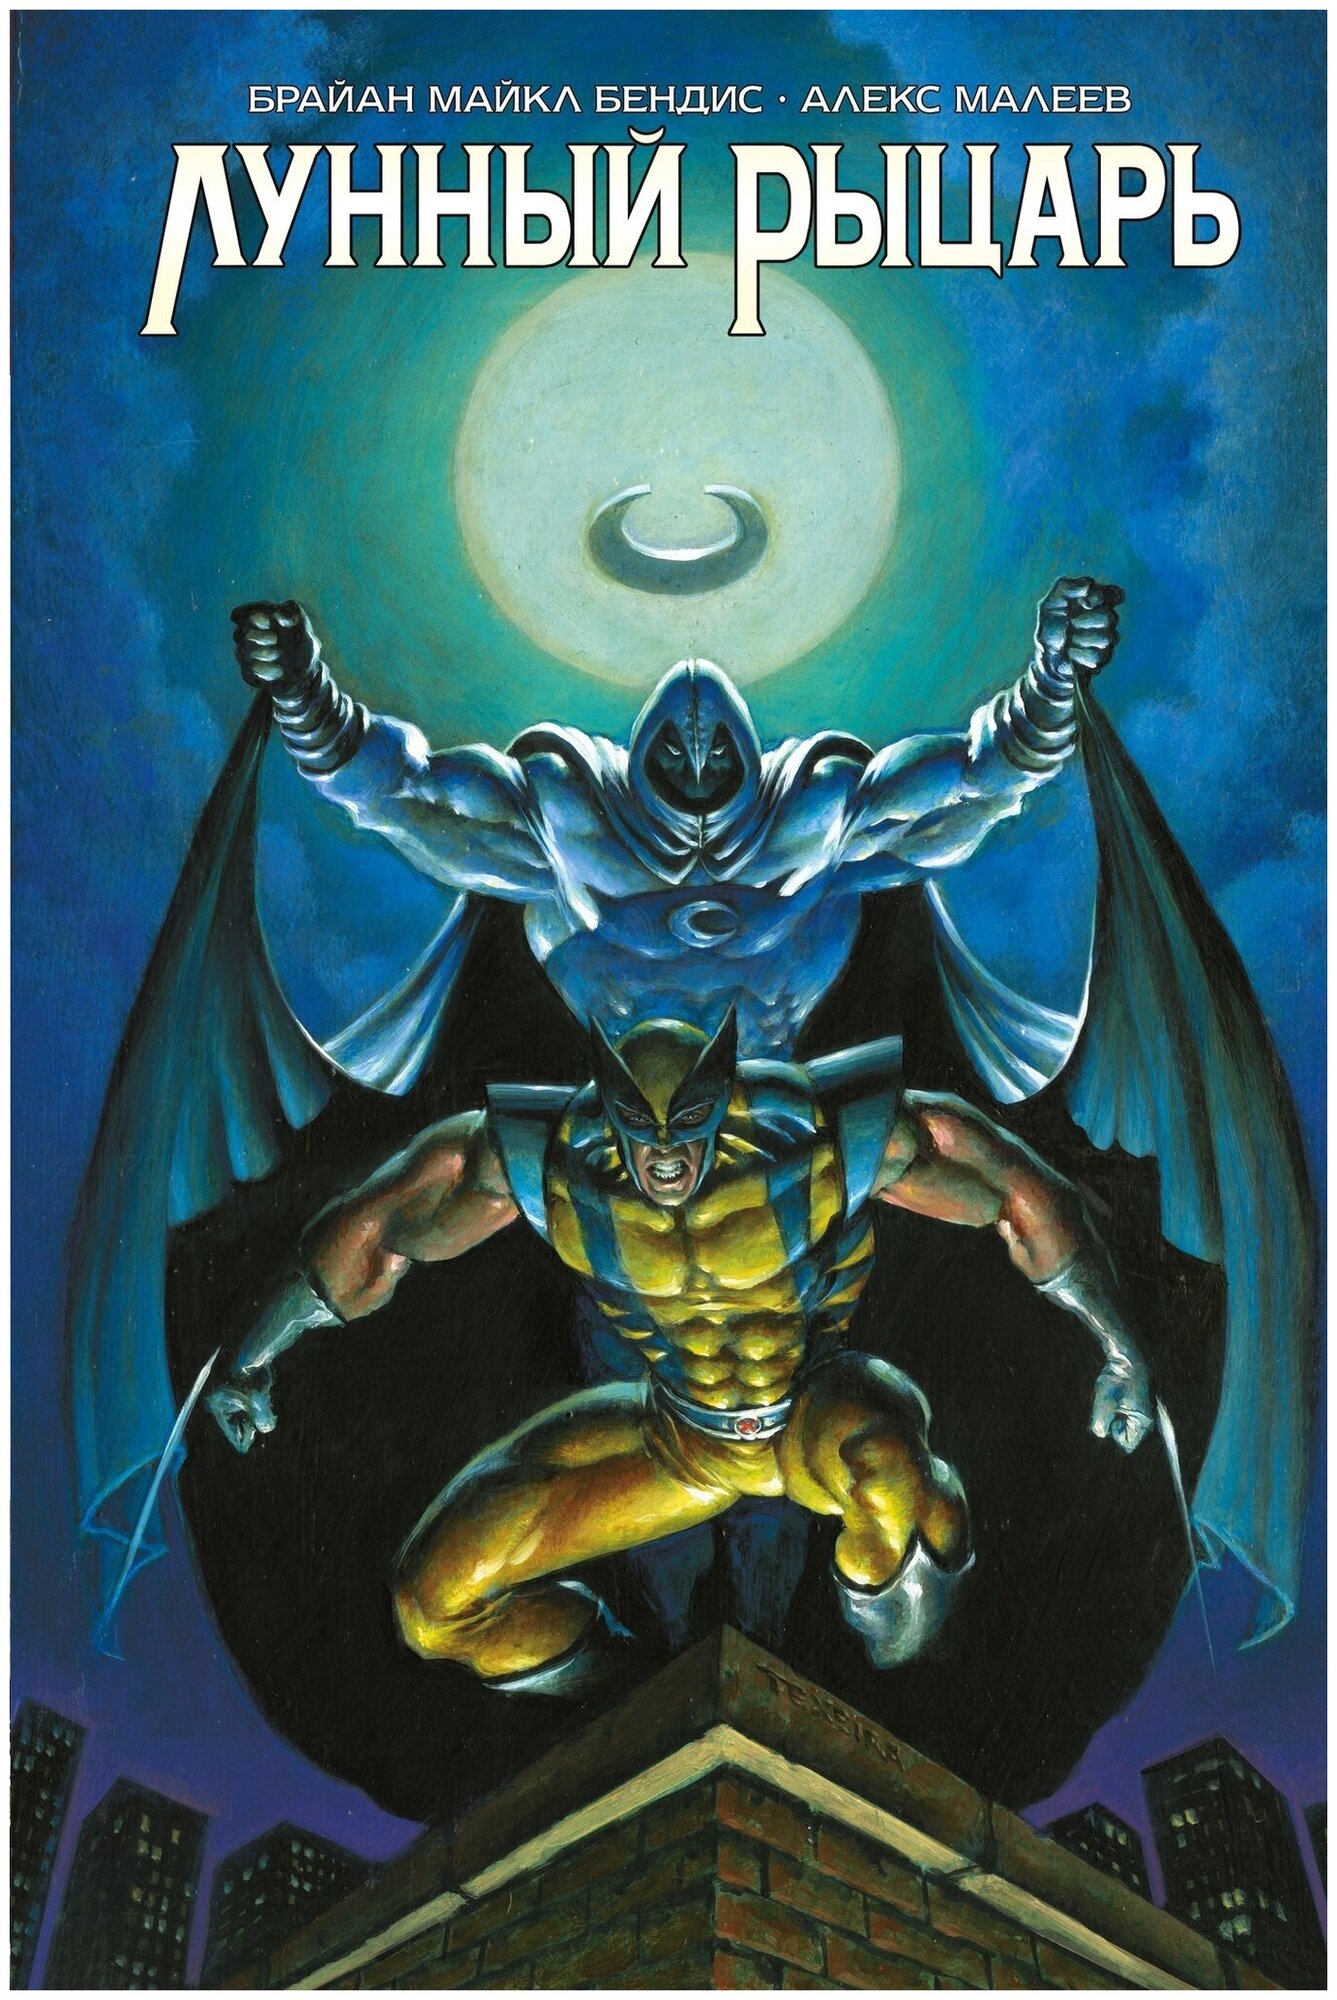 Лунный Рыцарь. Бендиса и Малеева (Эксклюзивная обложка для комиксшопов)